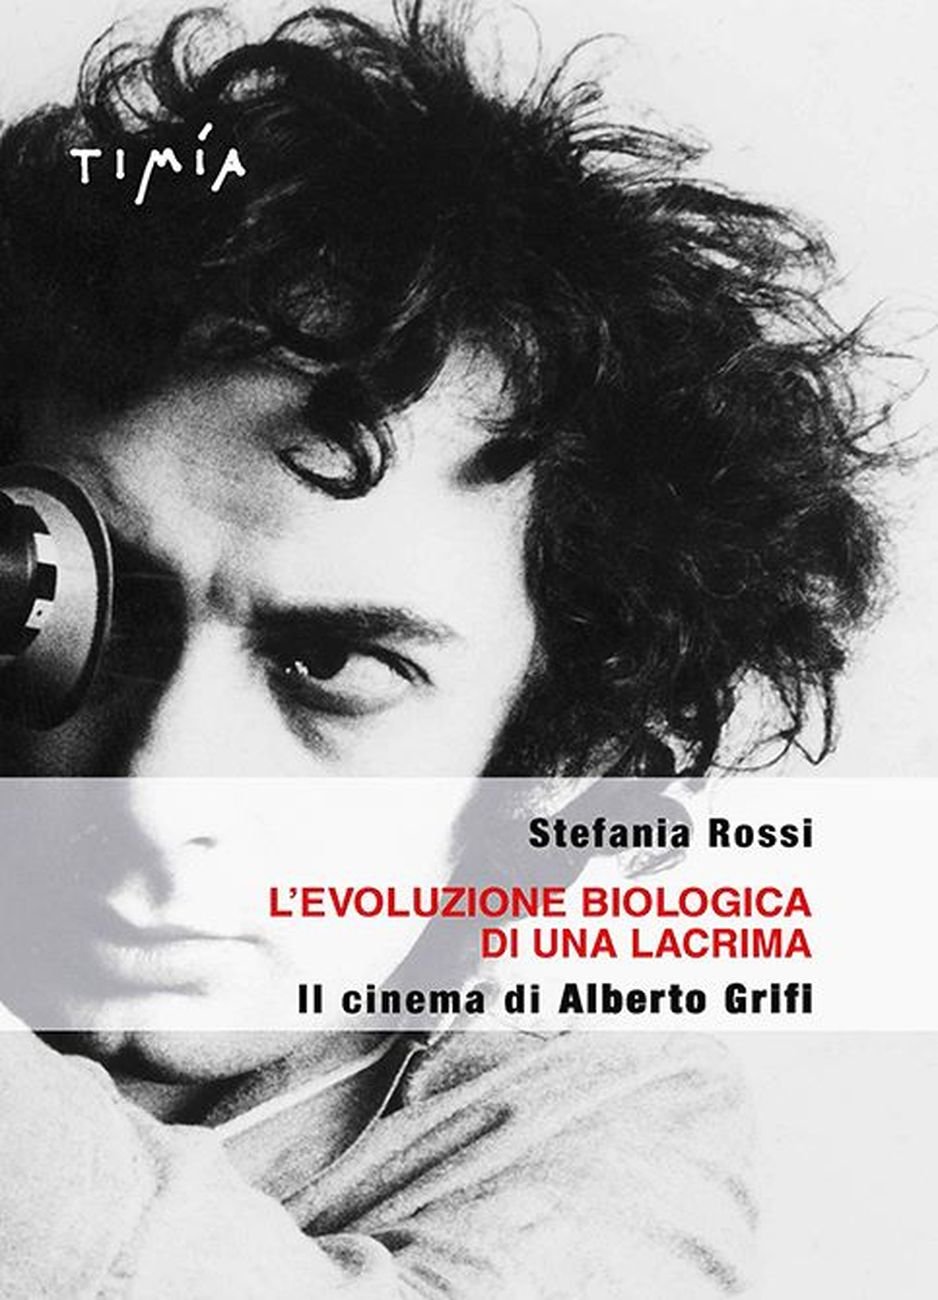 Stefania Rossi ‒ L' evoluzione biologica di una lacrima. Il cinema di Alberto Grifi (Timía Edizioni, Roma 2017)